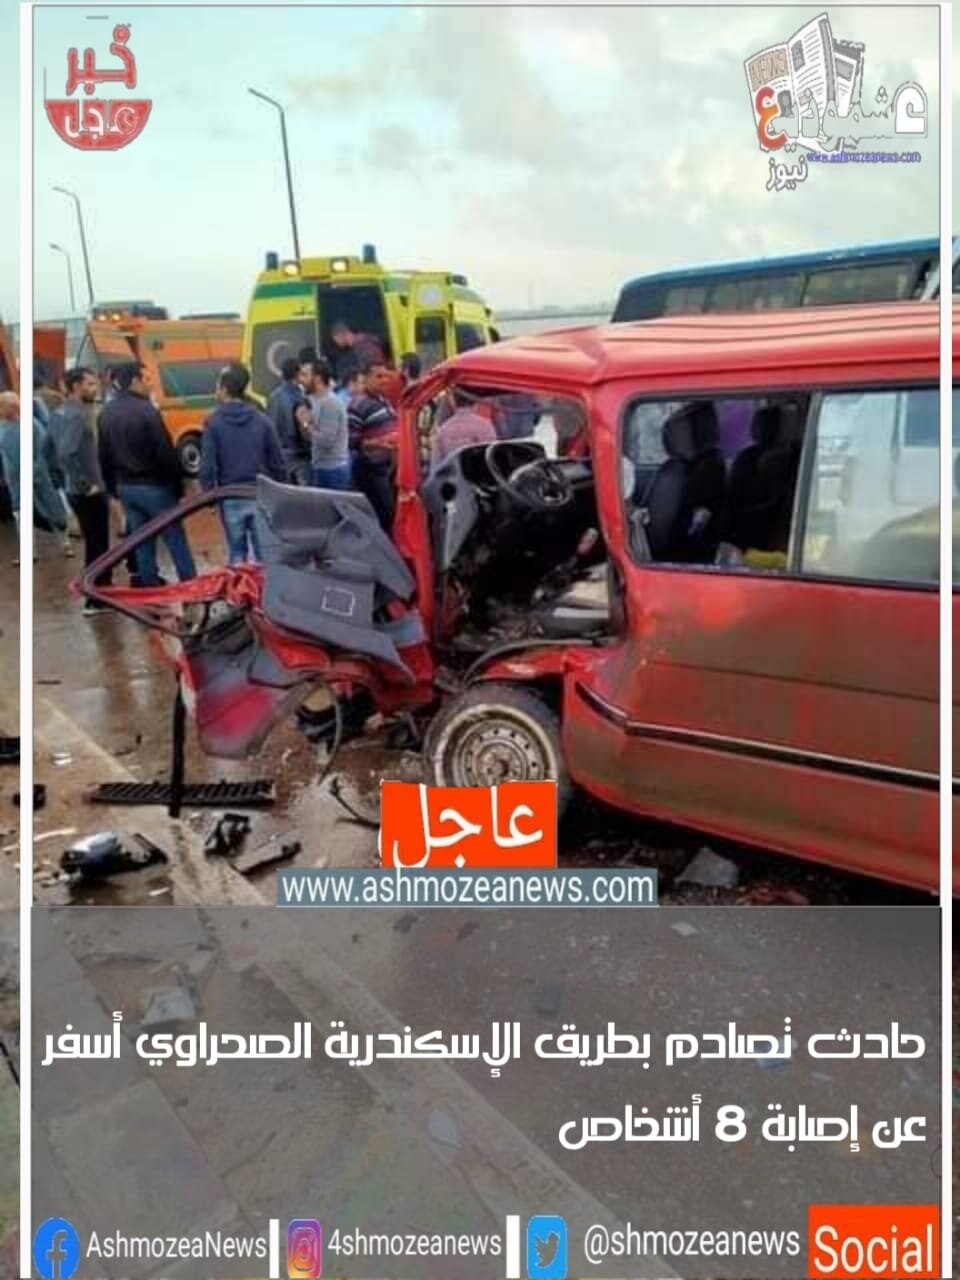 حادث تصادم بطريق الإسكندرية الصحراوي أسفر عنه إصابة 8 أشخاص 